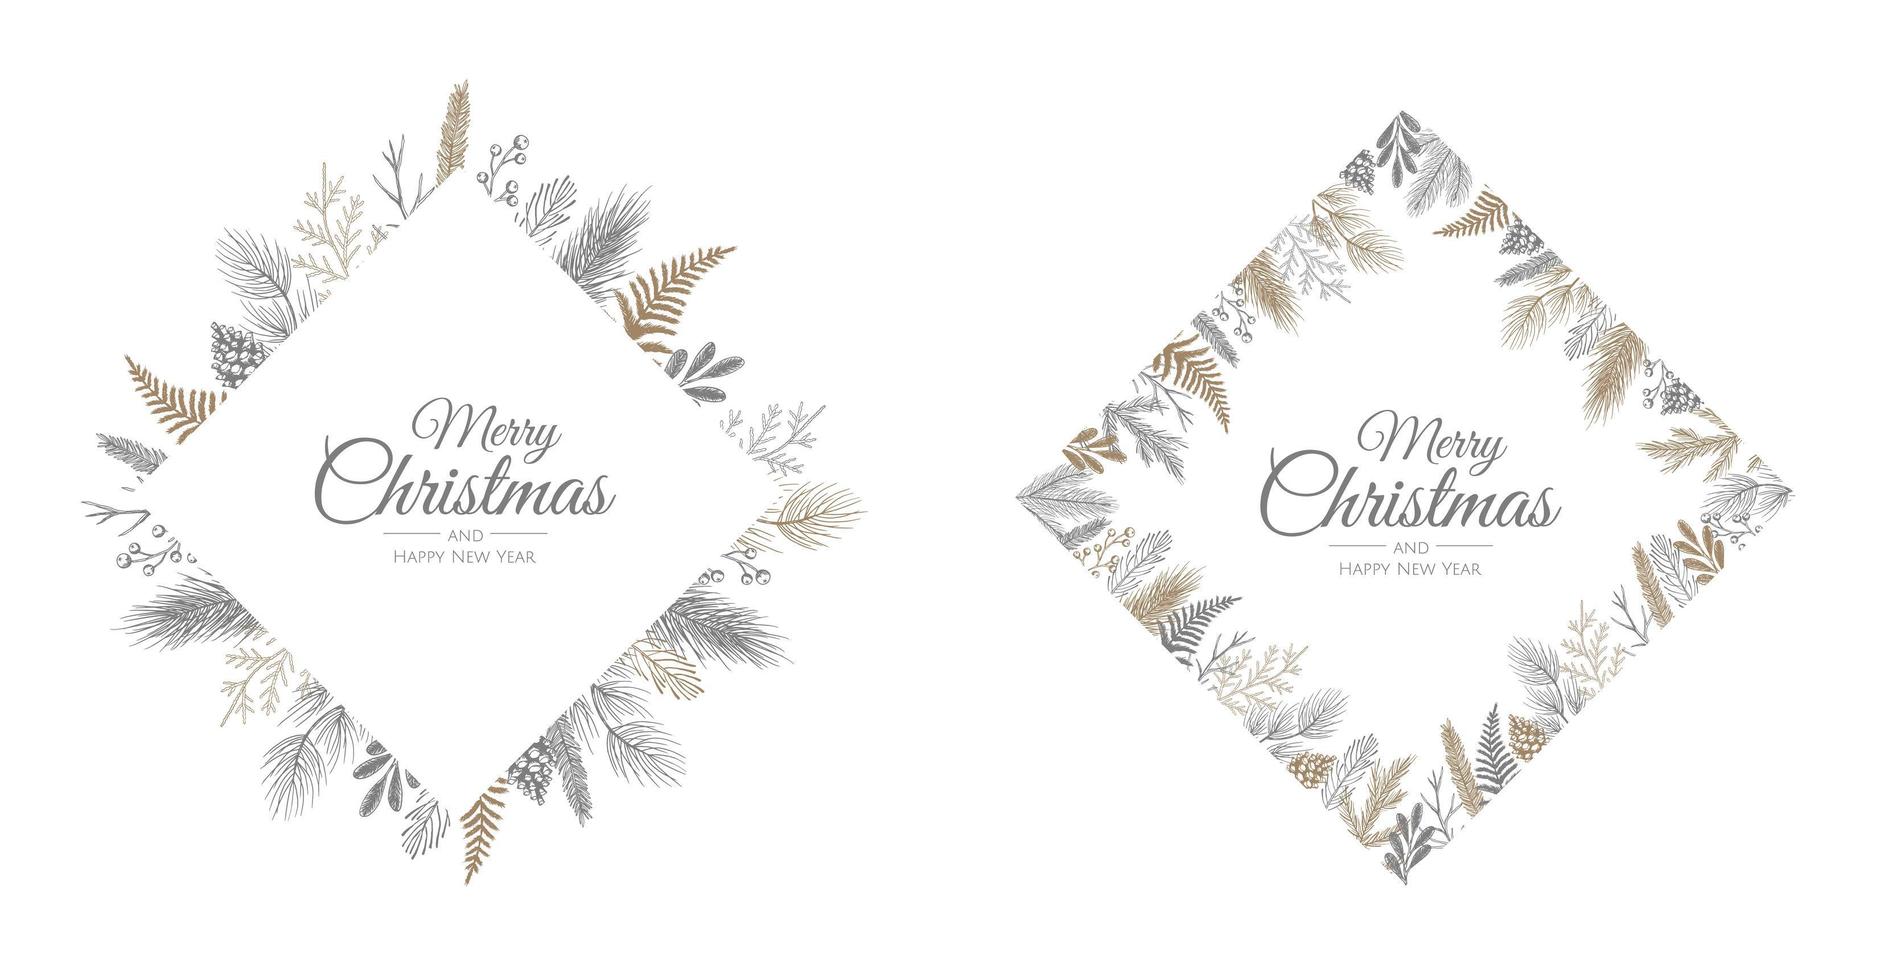 vector conjunto de tarjetas de Navidad. diseño de plantillas de tarjetas de fiesta navideña